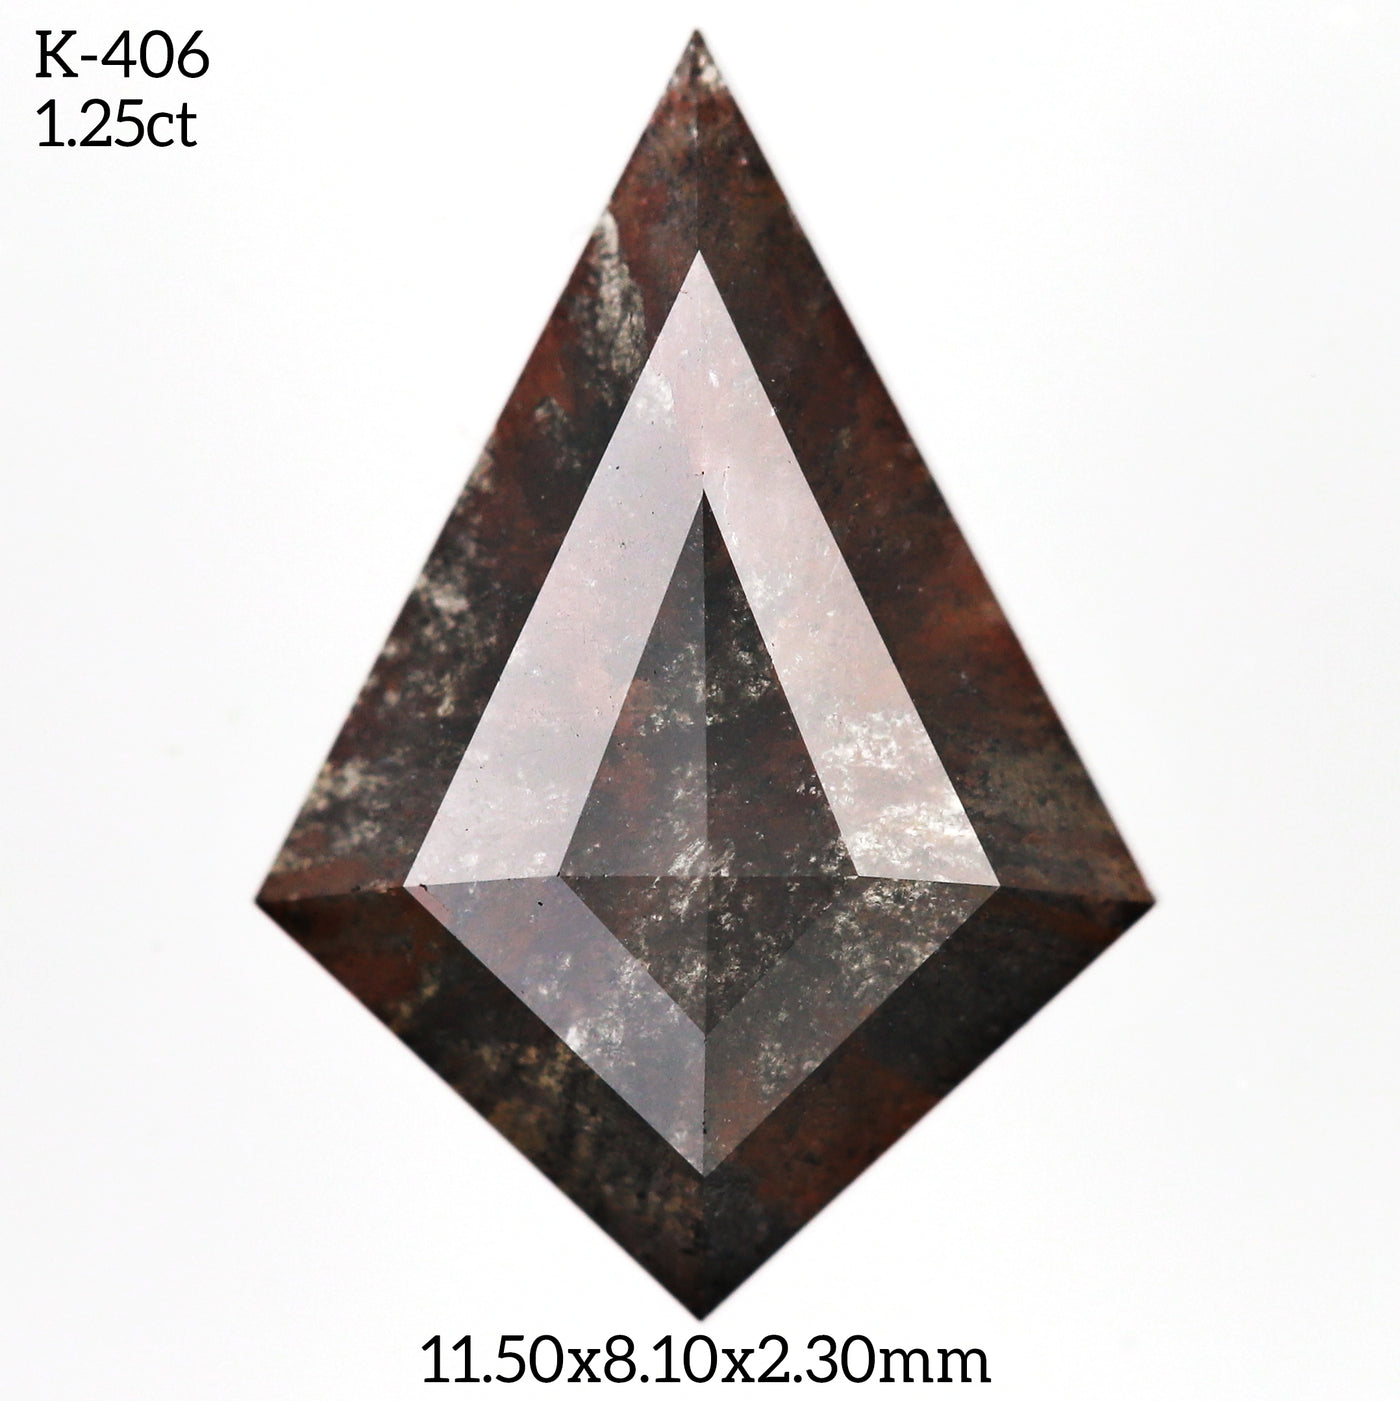 K406 - Salt and pepper kite diamond